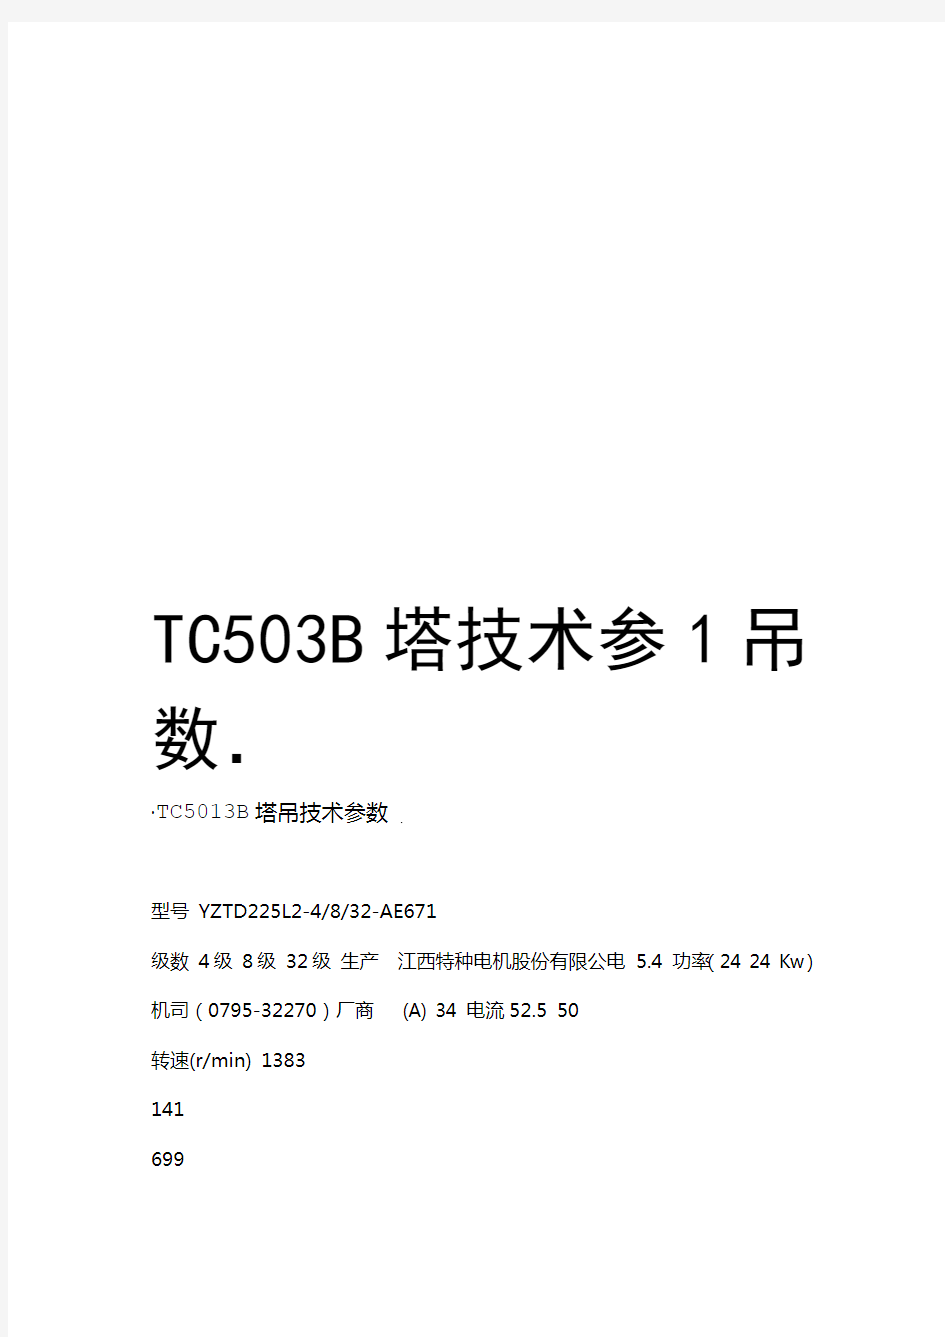 TC5013B塔吊技术参数资料